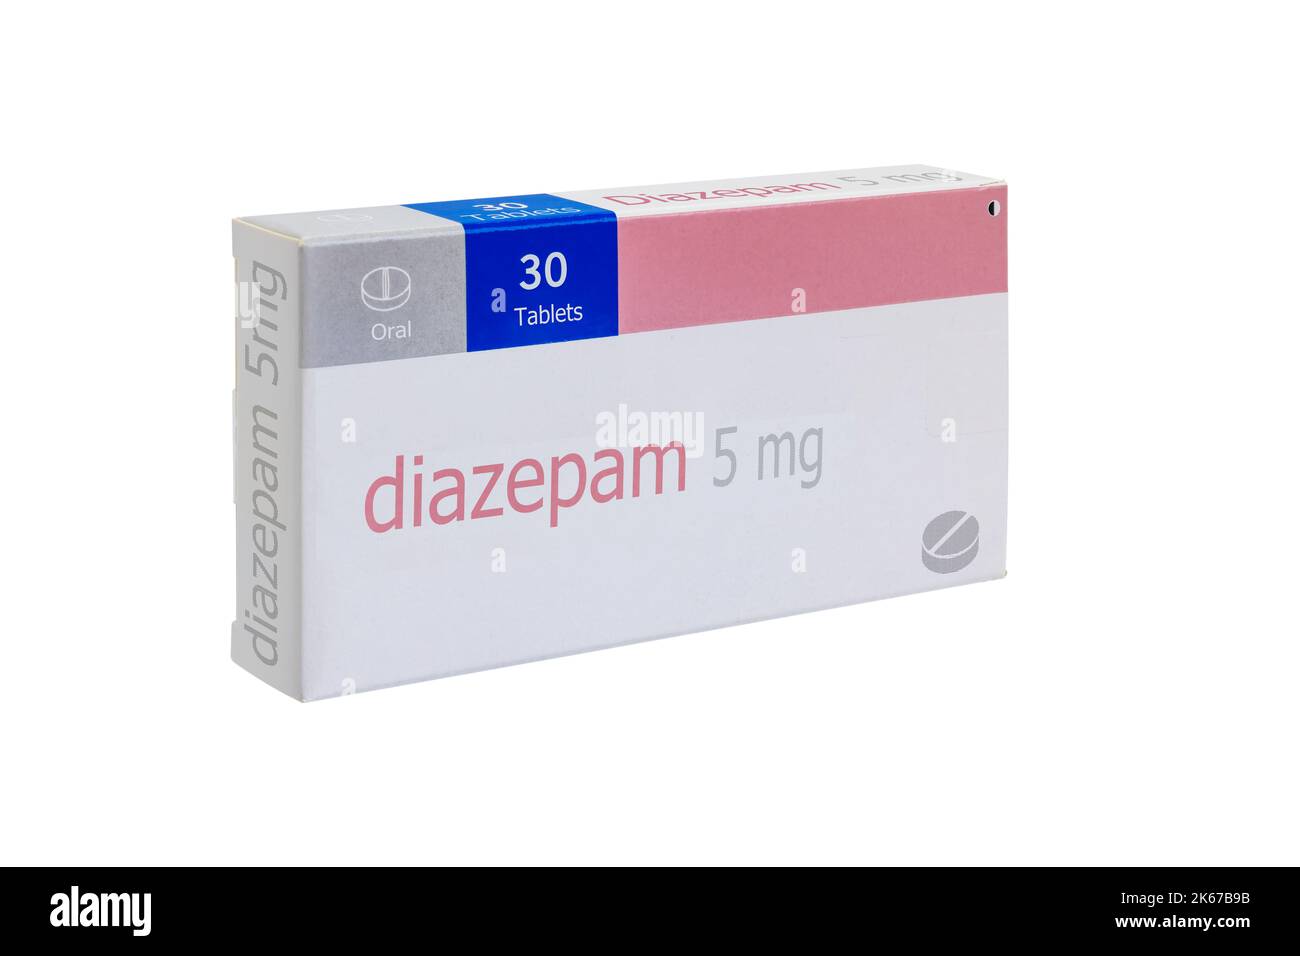 Boîte de Diazepam 5 mg. Le diazépam est un médicament de la famille des benzodiazépines qui produit un effet calmant. Il est utilisé pour traiter l'anxiété, l'alcool withdra Banque D'Images